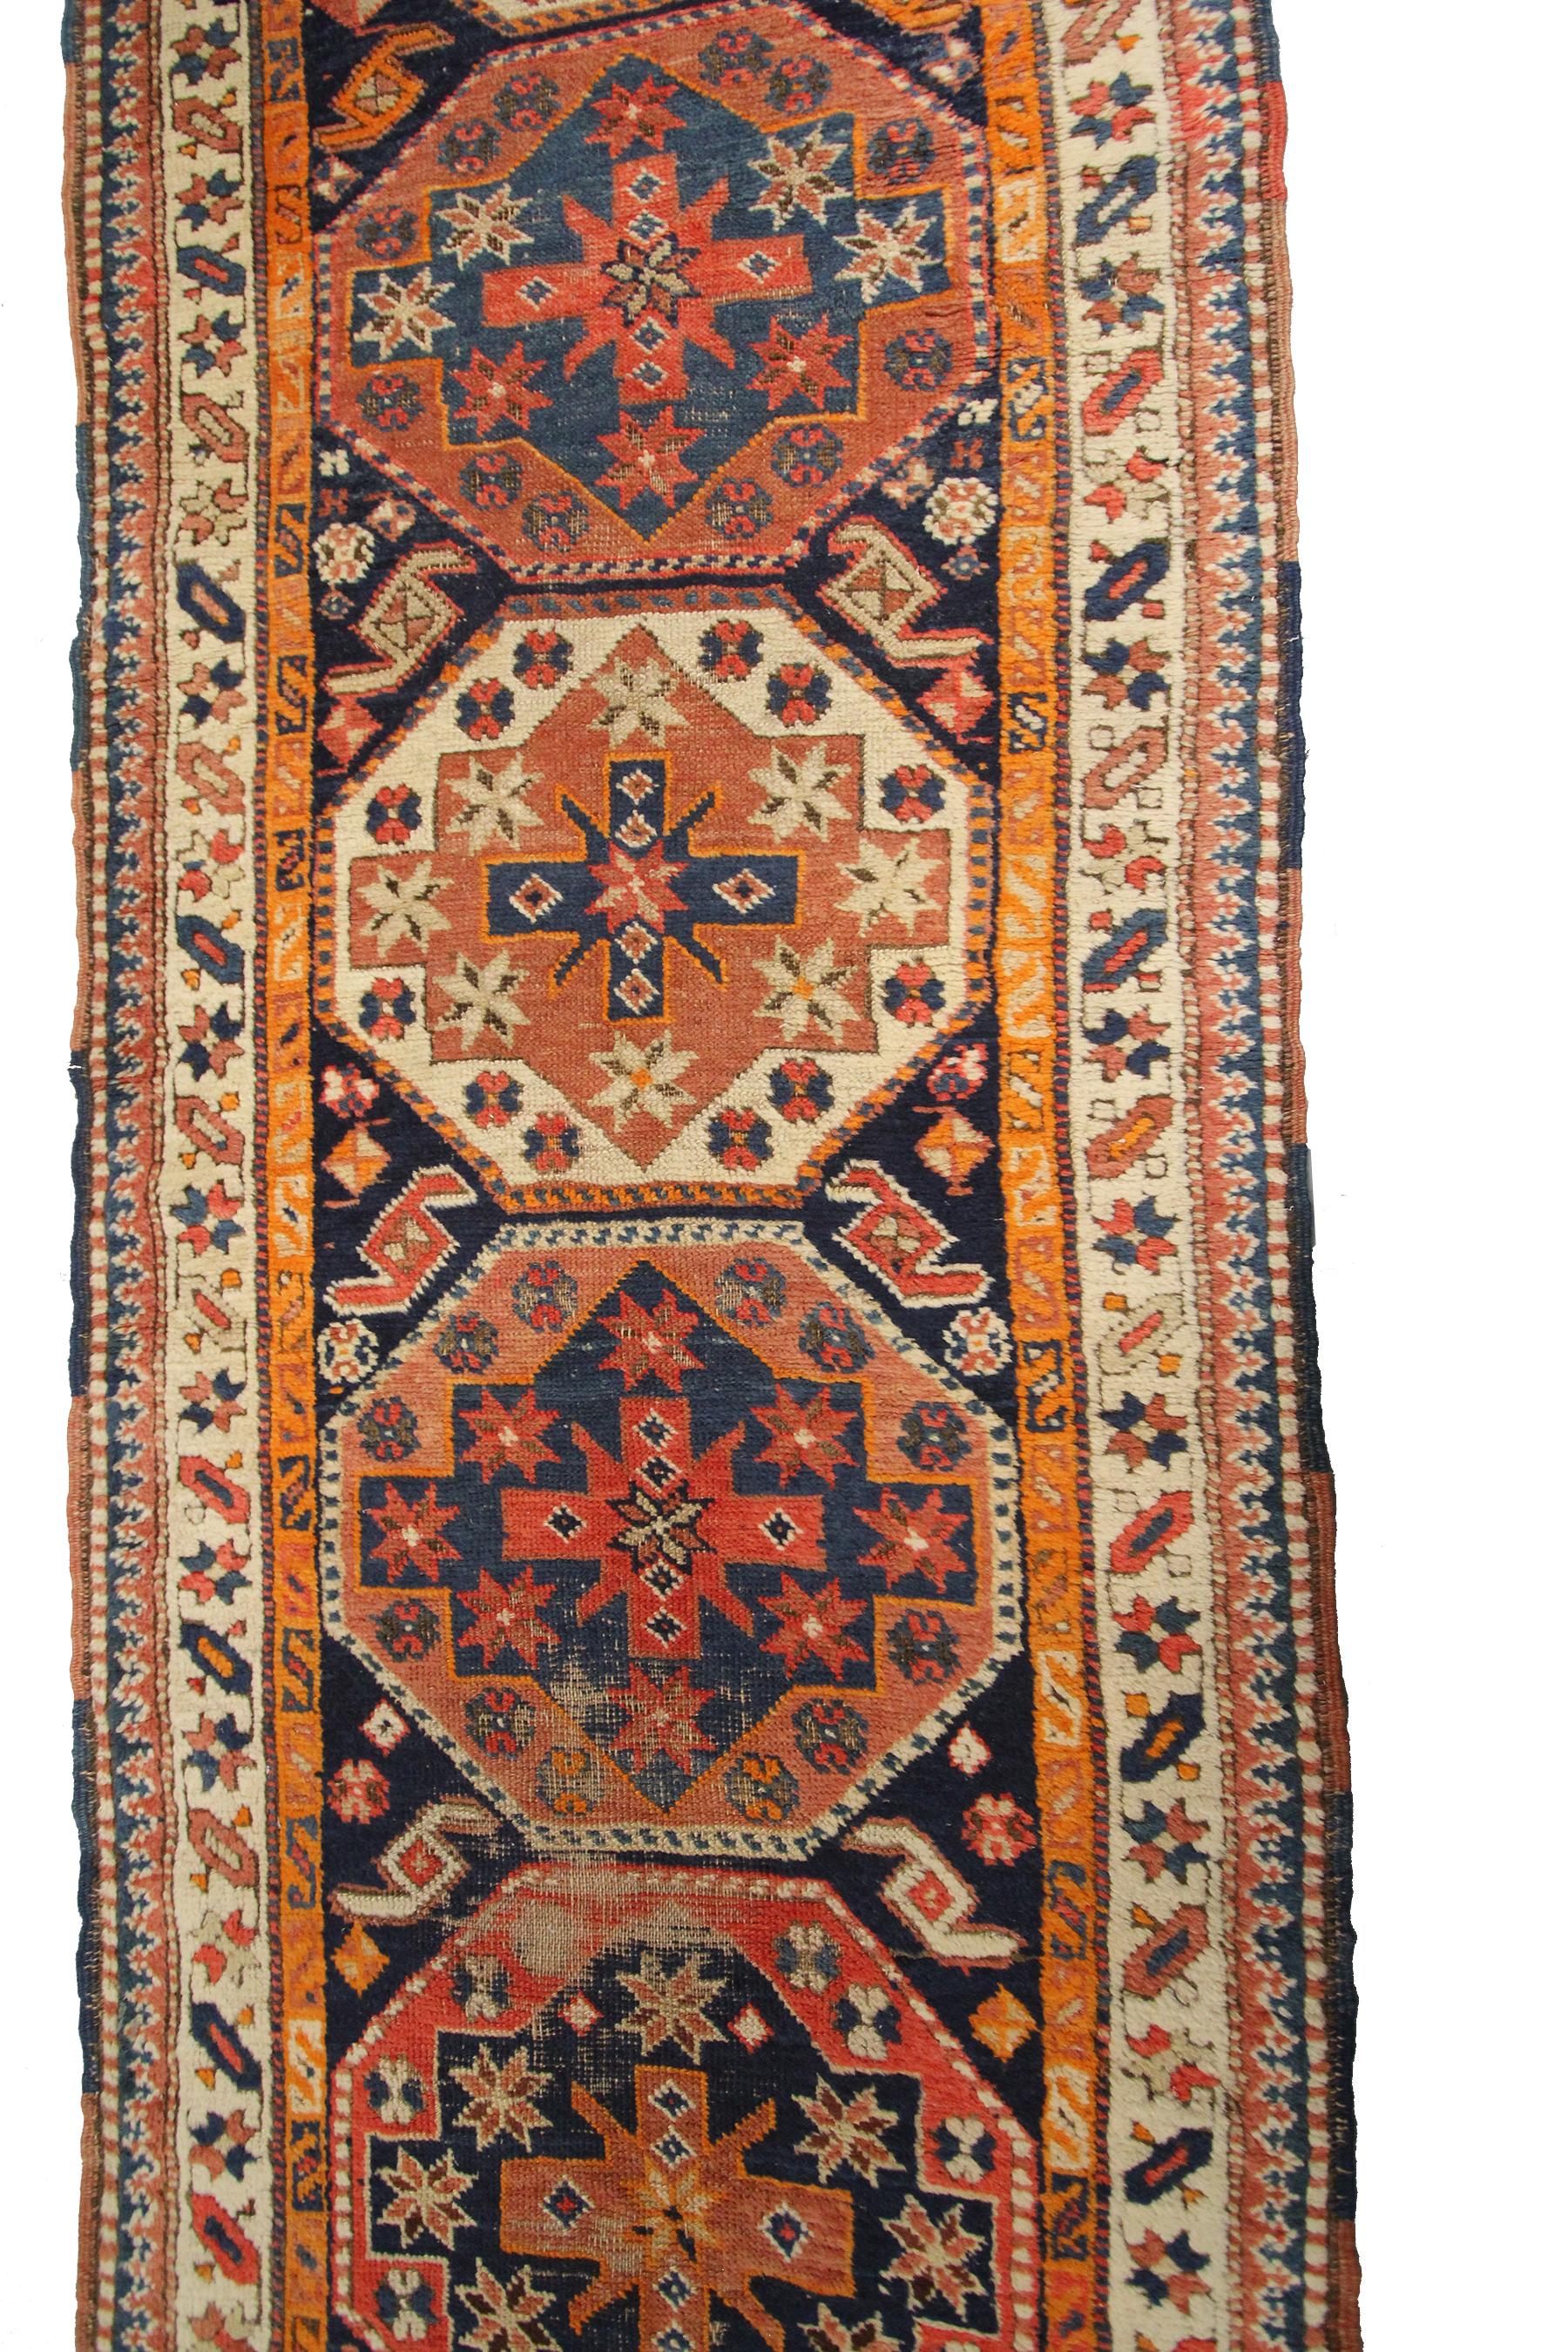 Antique Caucasian Runner Caucasian Kazak Rug Geometric 3x12 94cm x 369cm 1880  For Sale 1